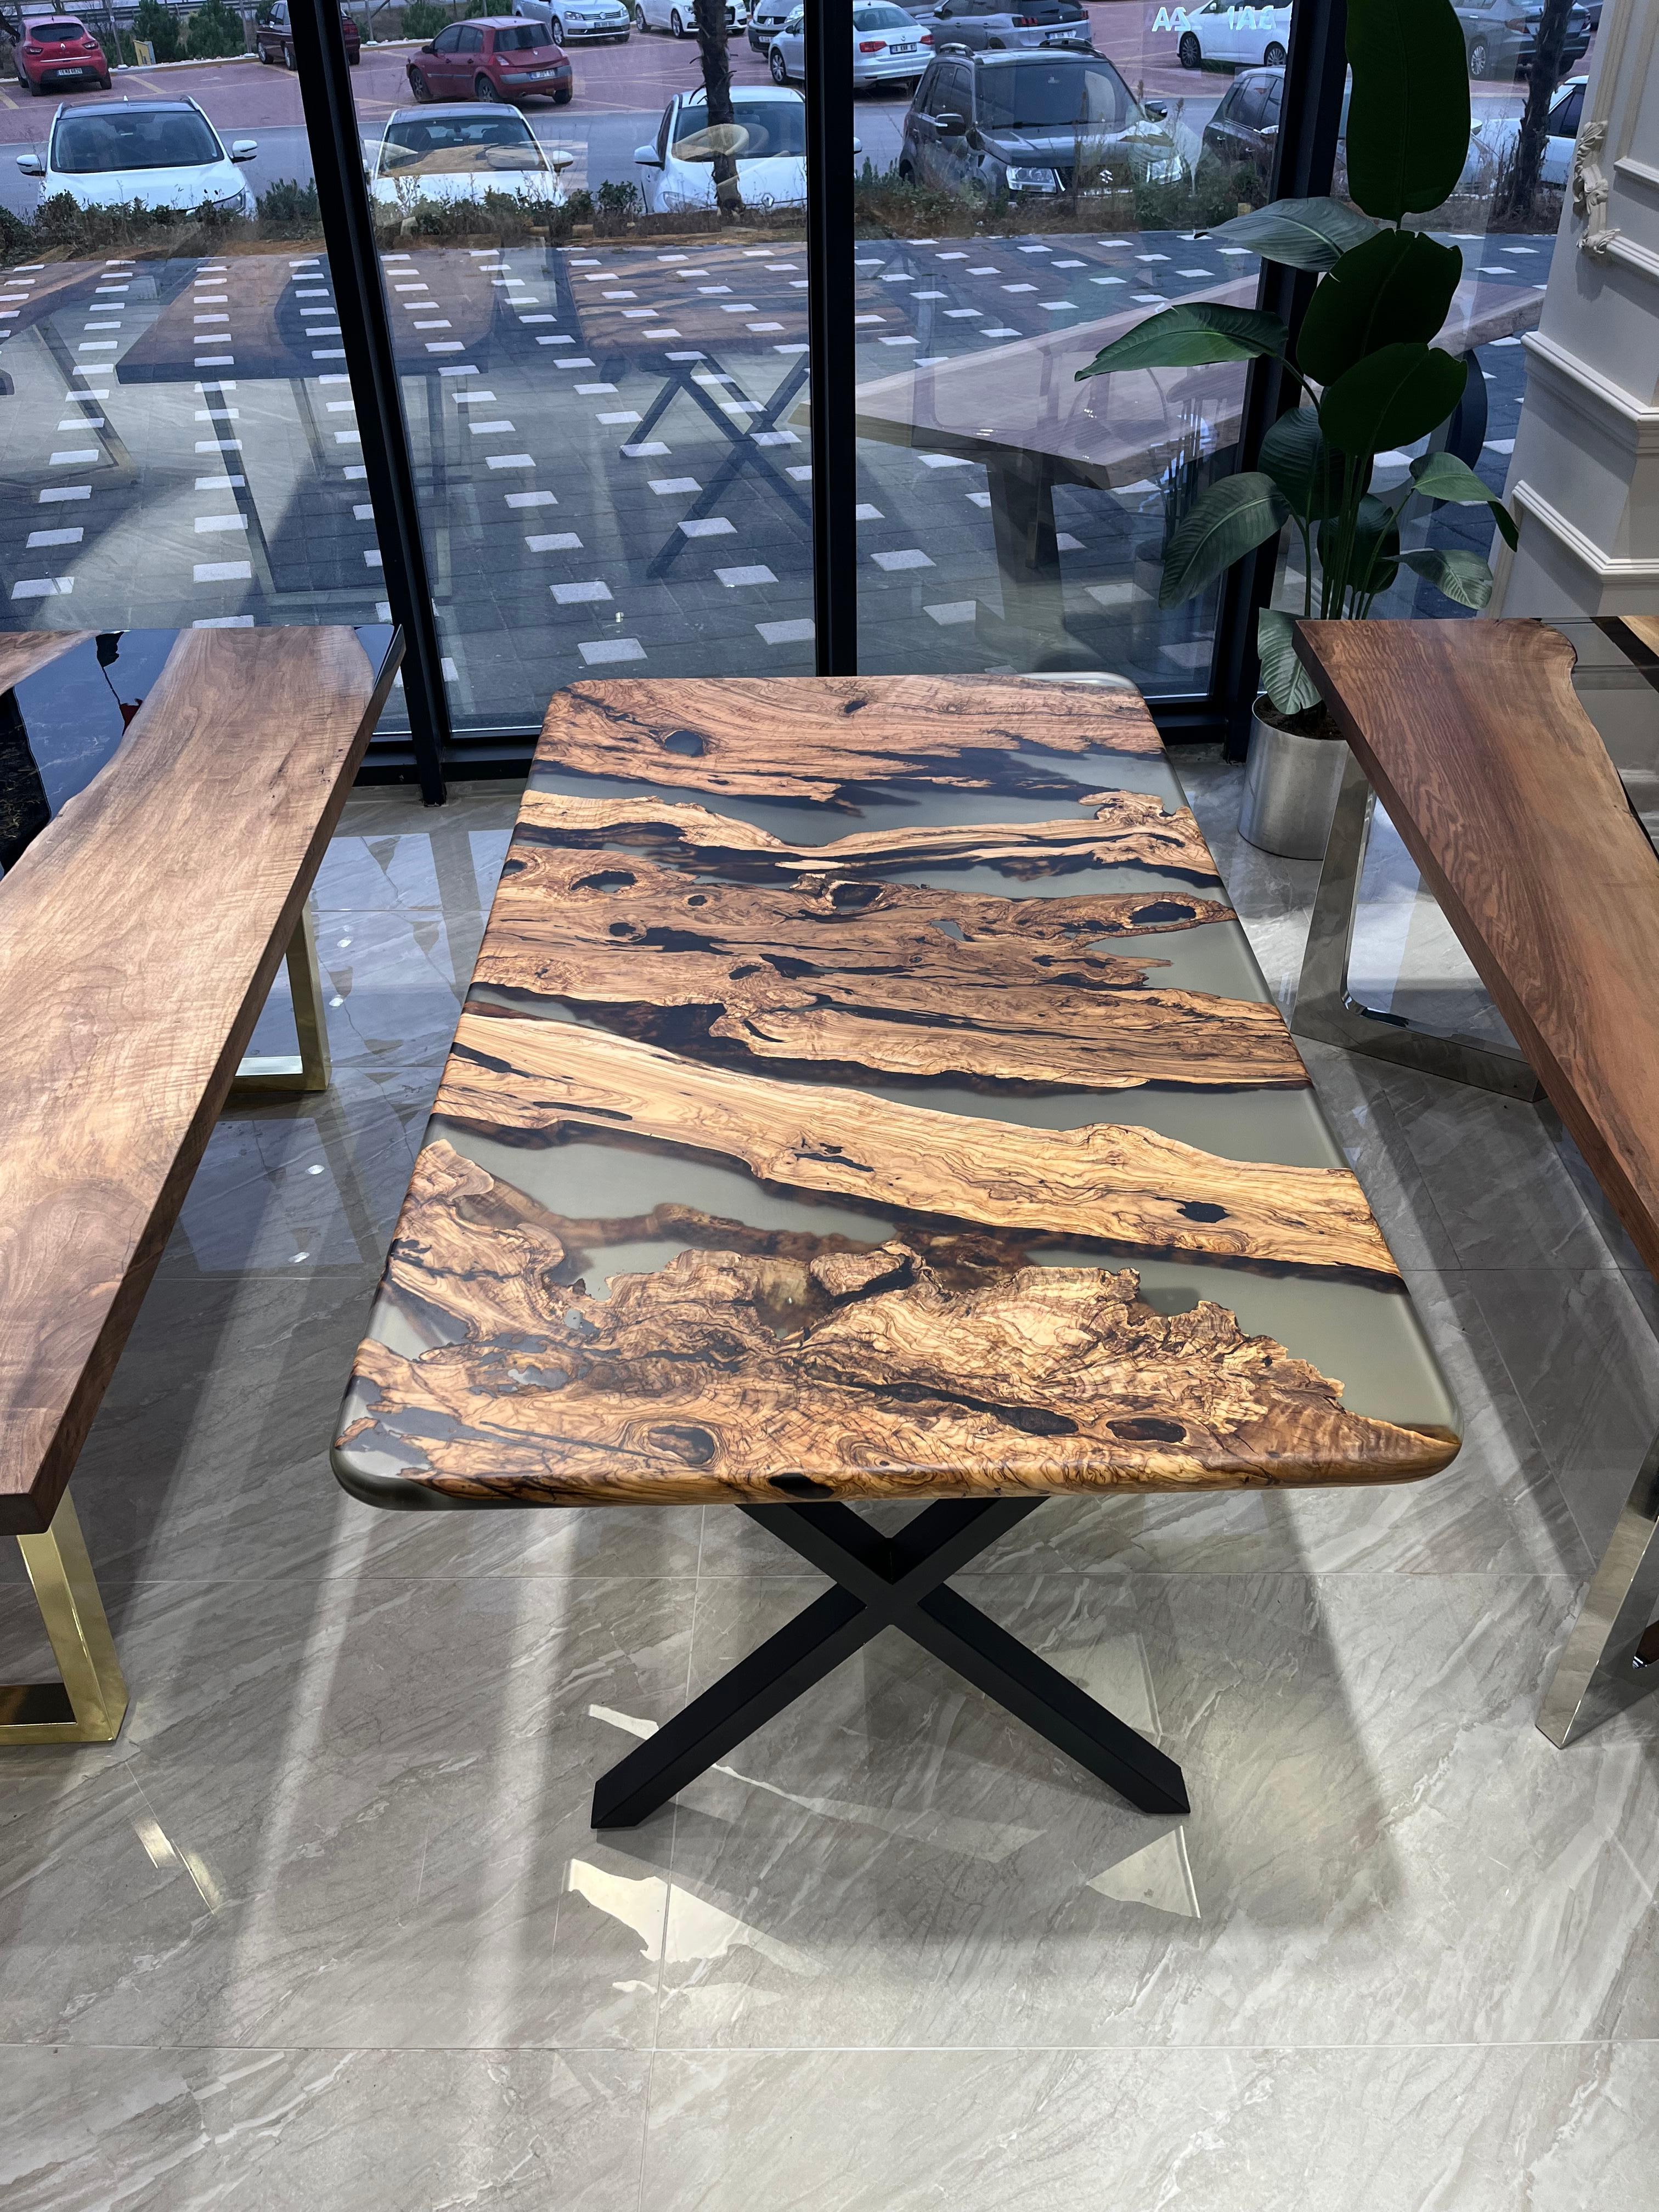 Table en époxy Olive sur mesure

Cette superbe table est fabriquée en bois d'Oliver méditerranéen. La beauté unique des courbes naturelles du bois d'olivier combinées à l'époxy bleu se retrouve dans cette table.

Tous les bois ont leur propre forme